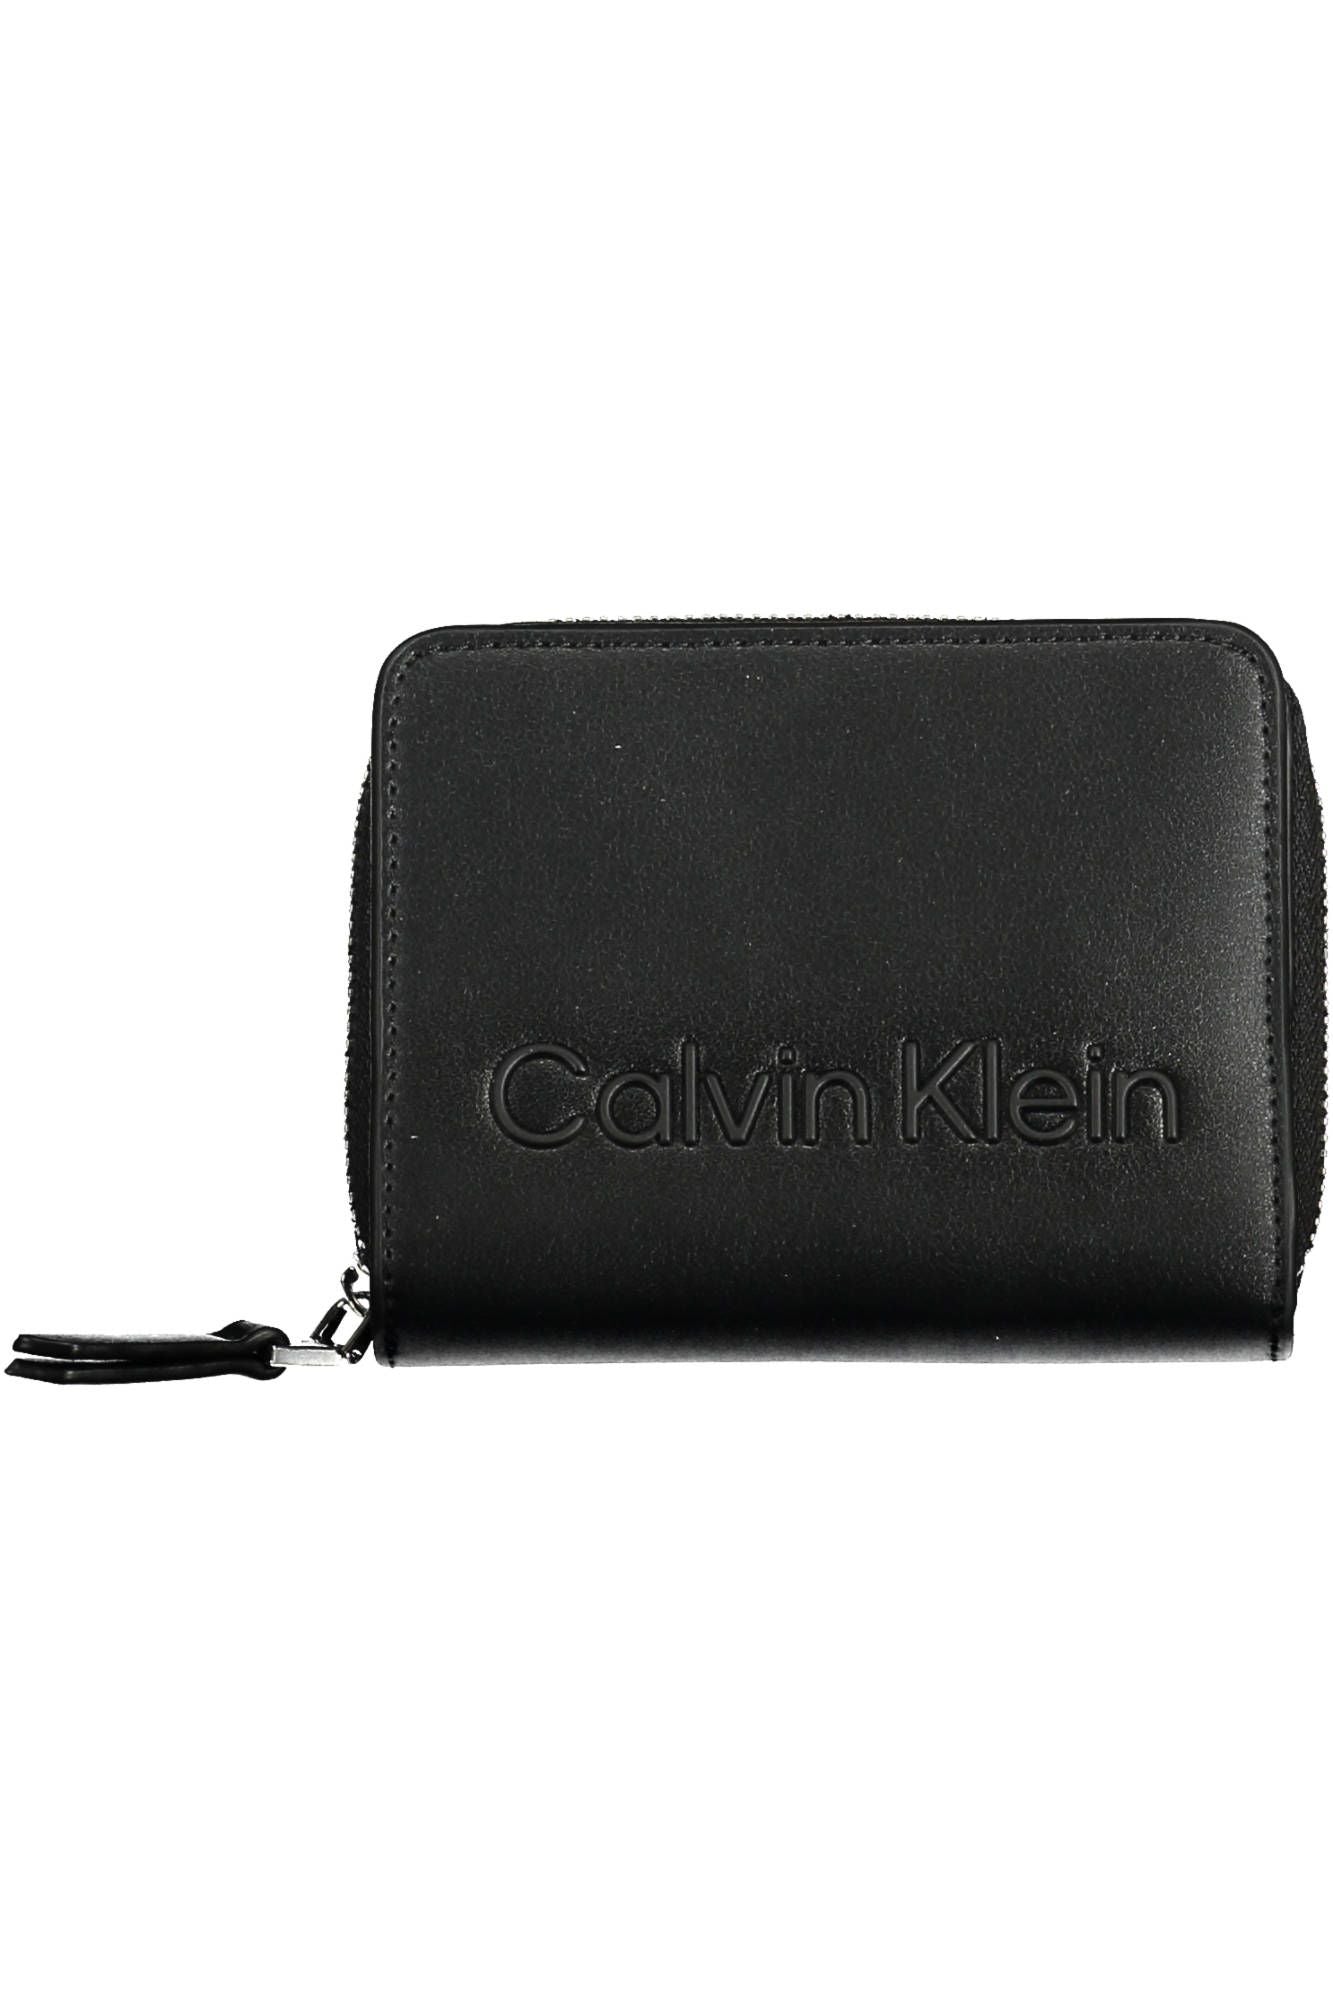 Elegant Zip Wallet with Sleek Card Spaces